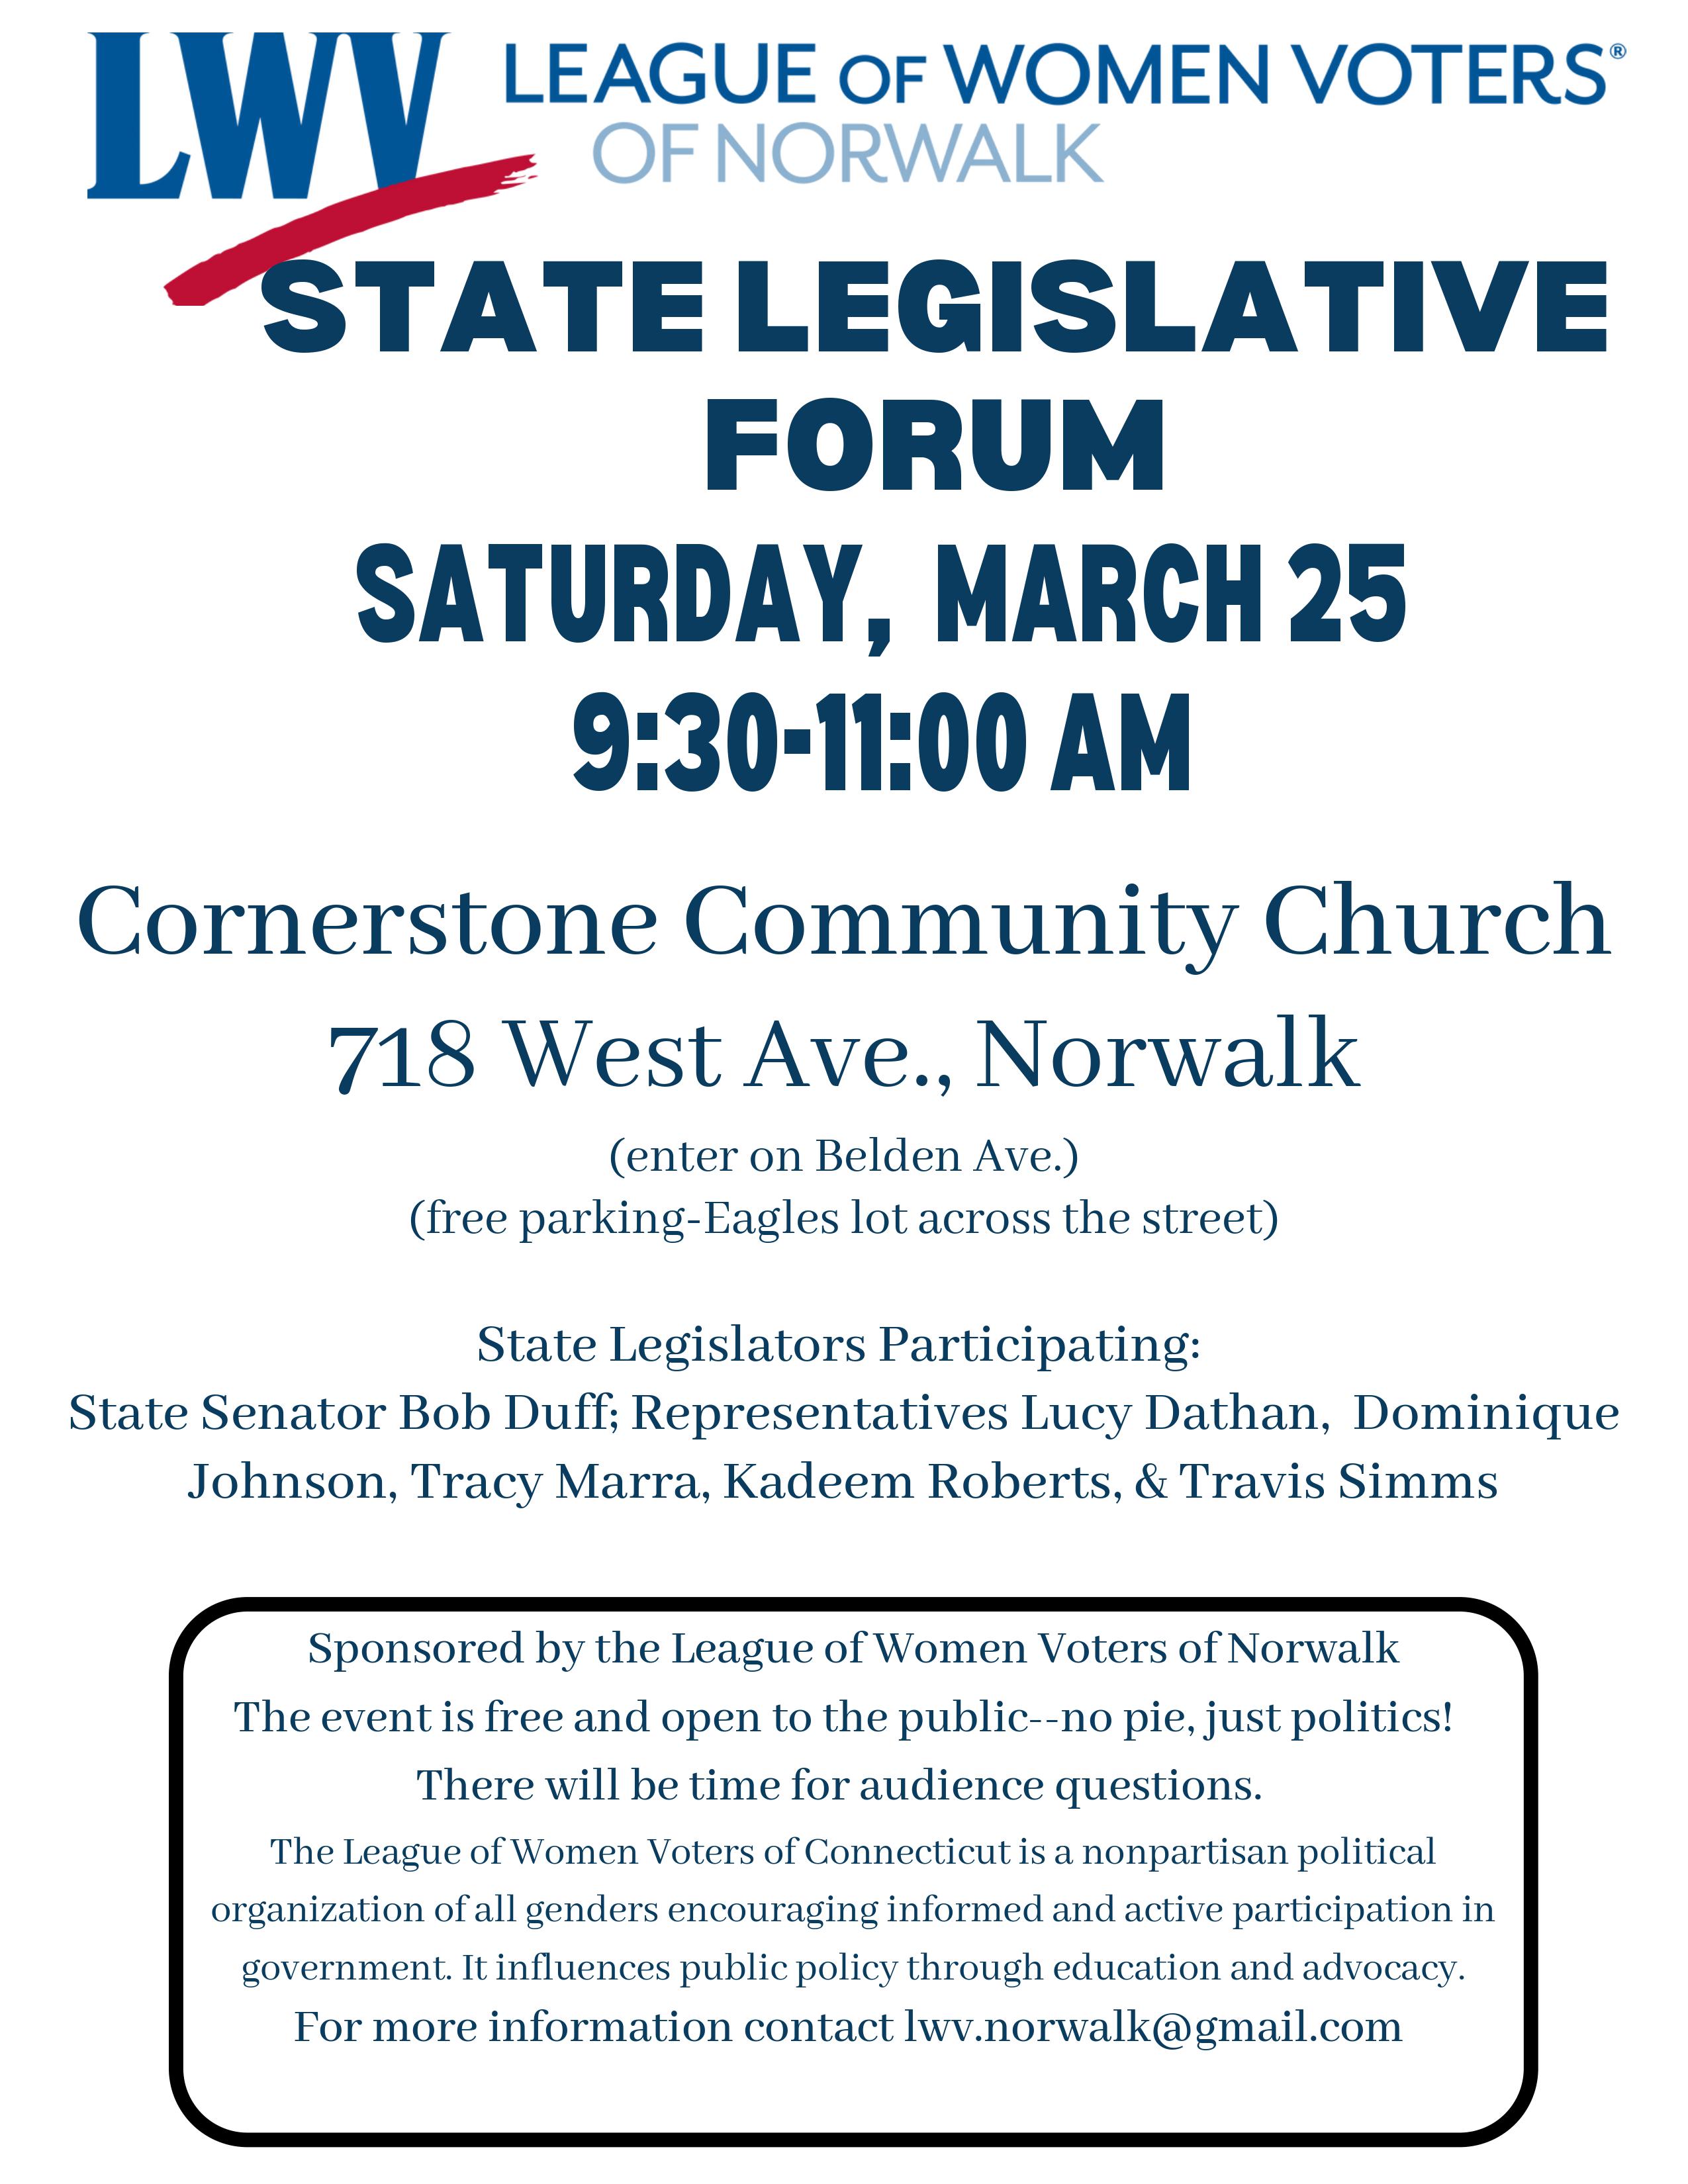 Flyer for lwv norwalk legislative forum event